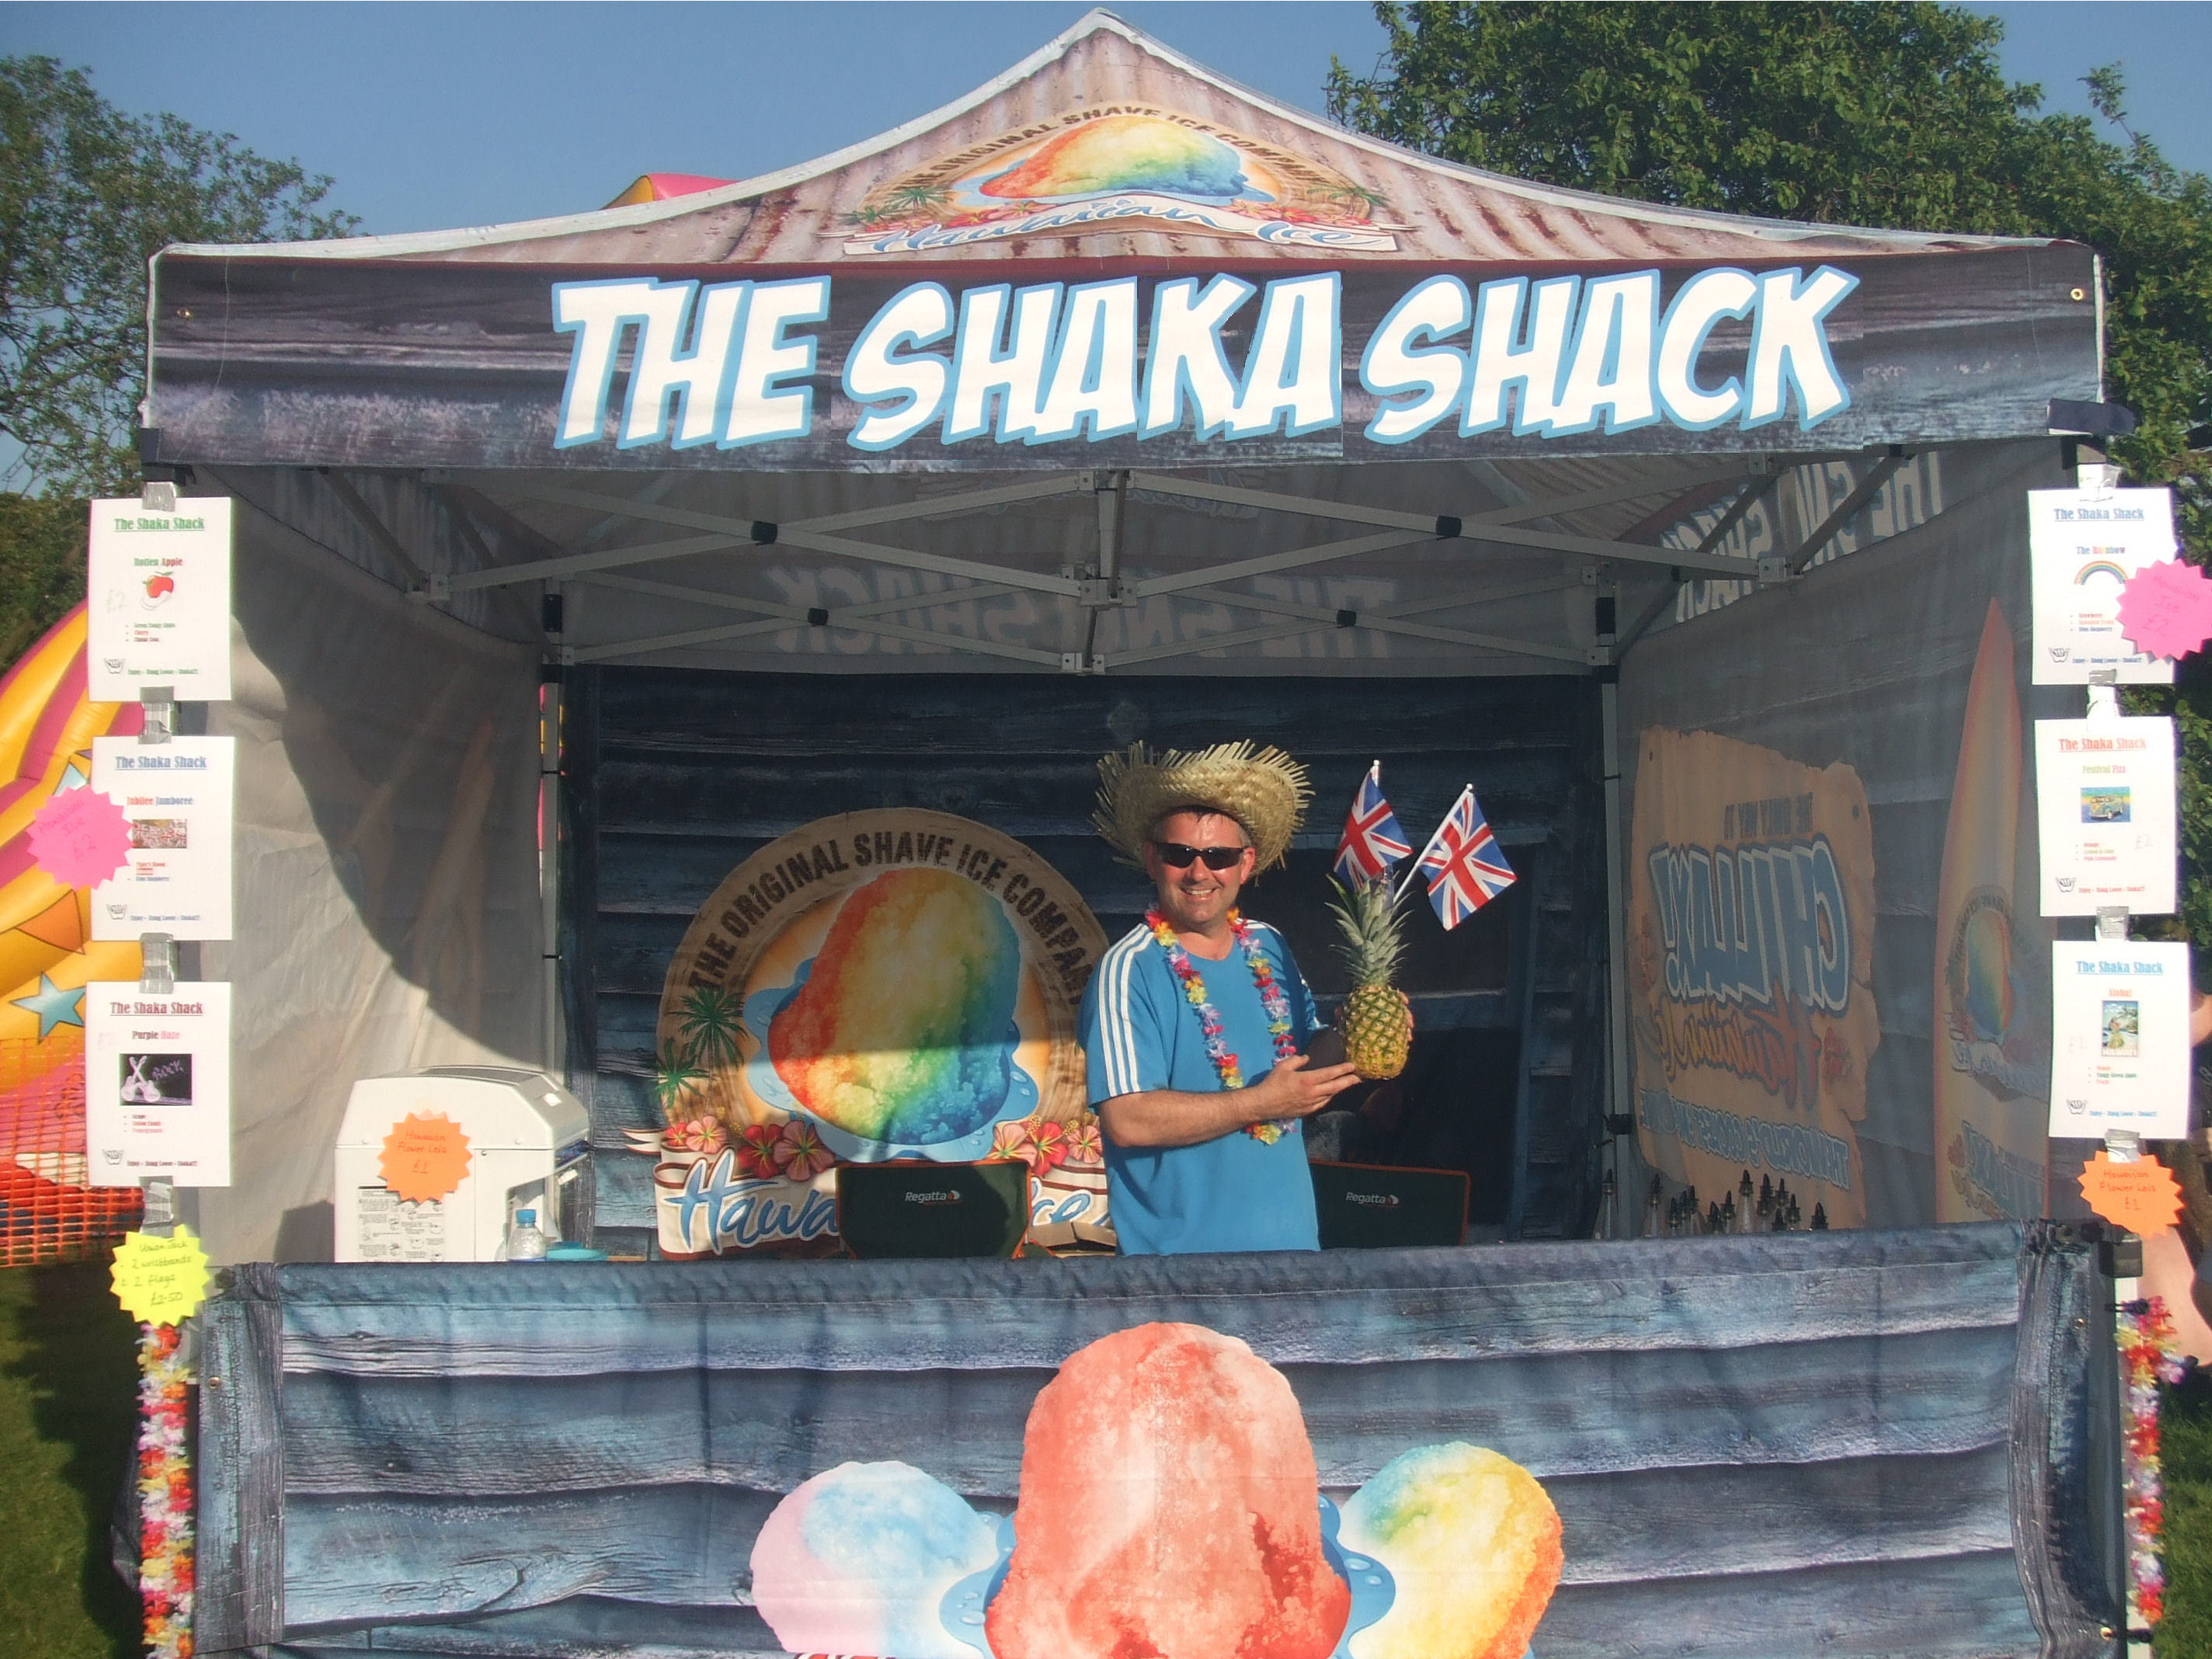 The Shaka Shack!